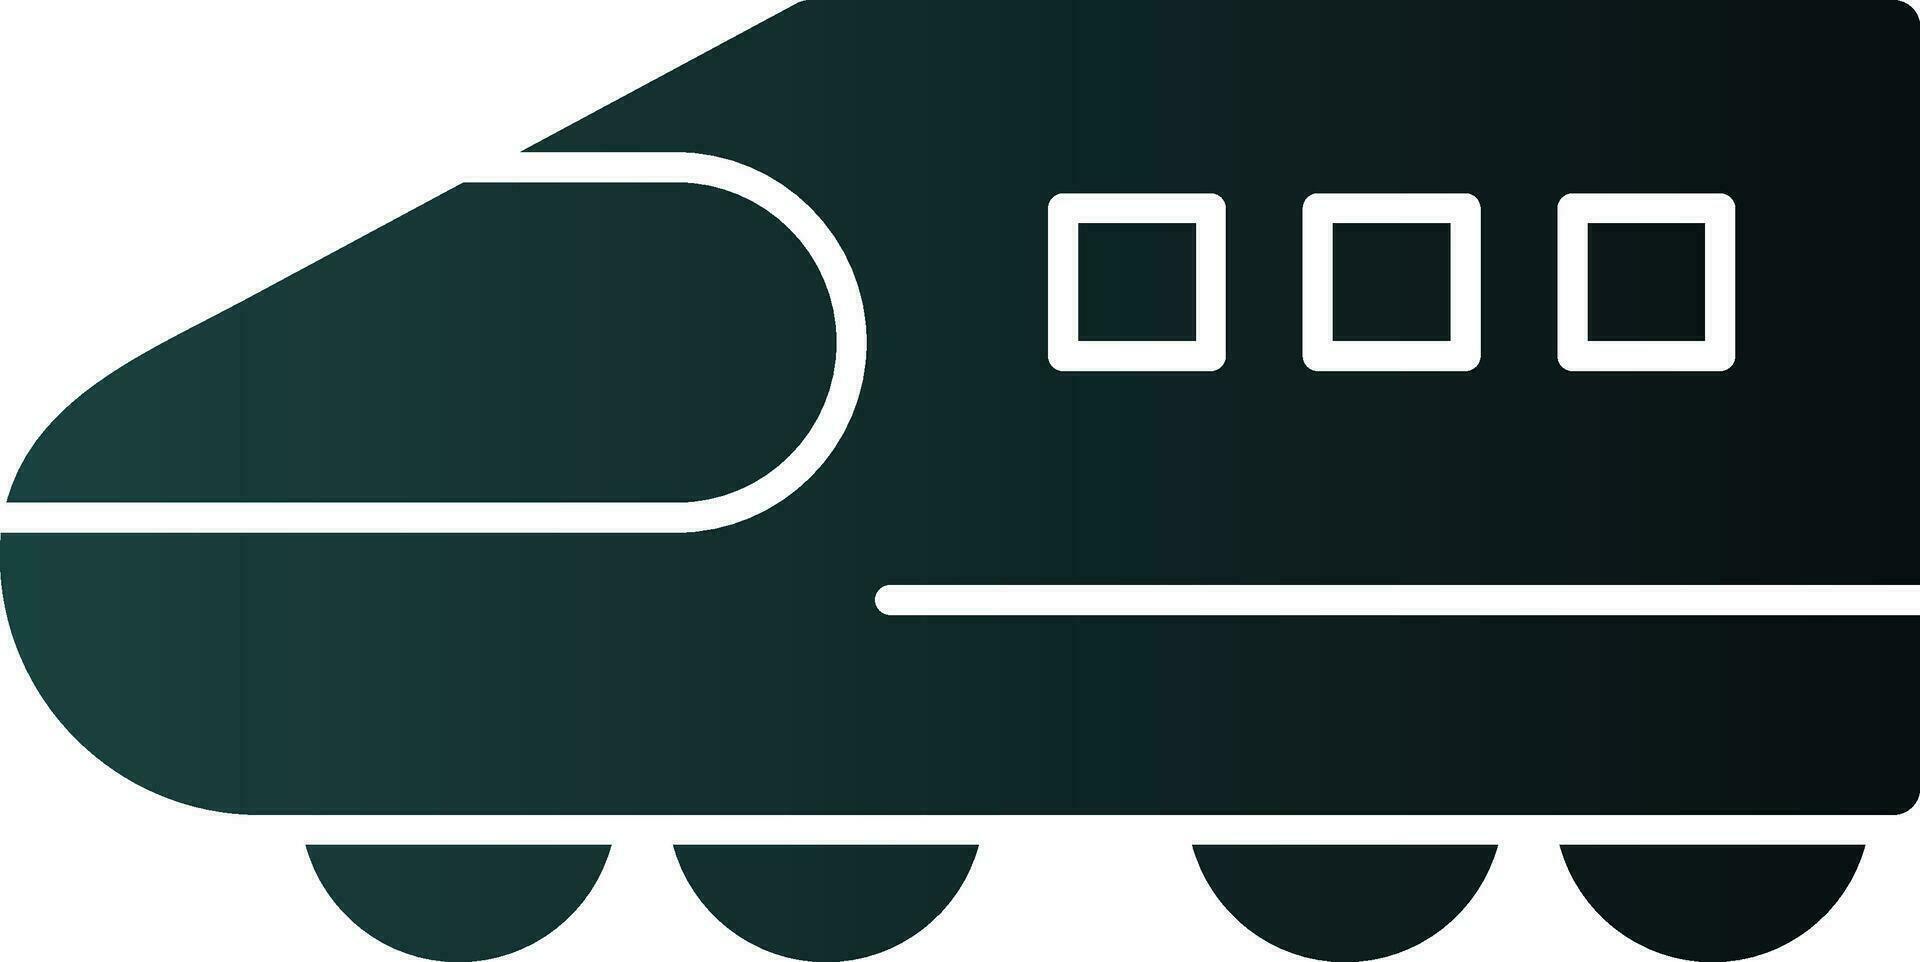 shinkansen vector icono diseño